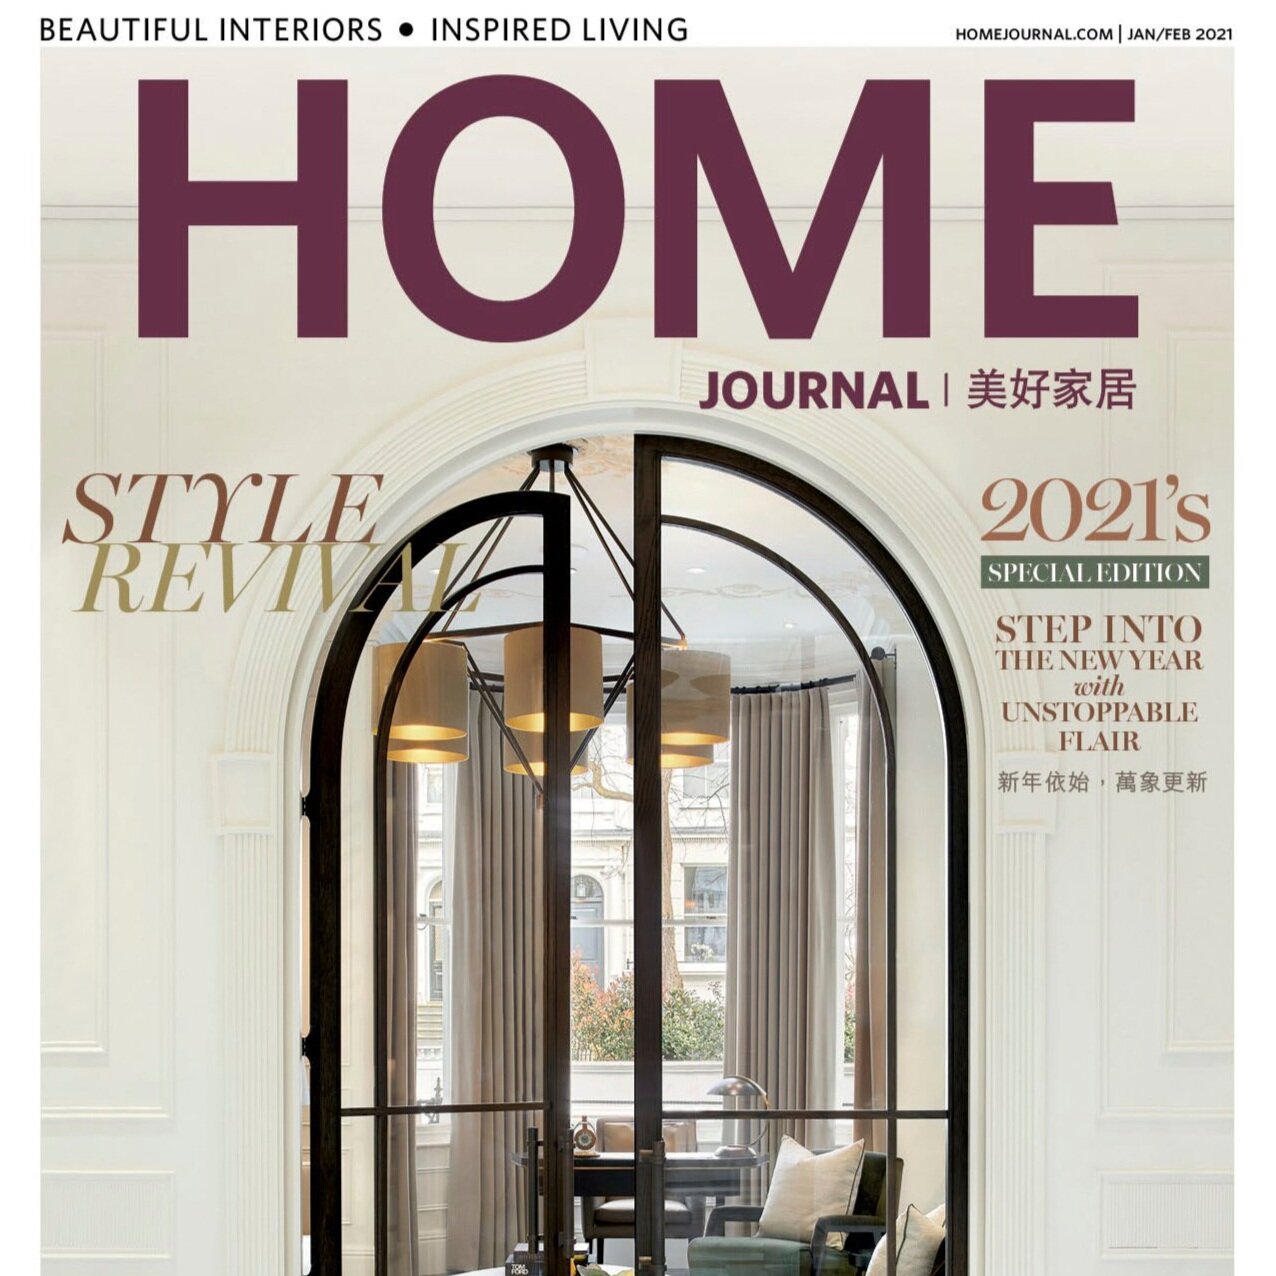 Home+Journal+Jan%3AFeb+2021.jpg